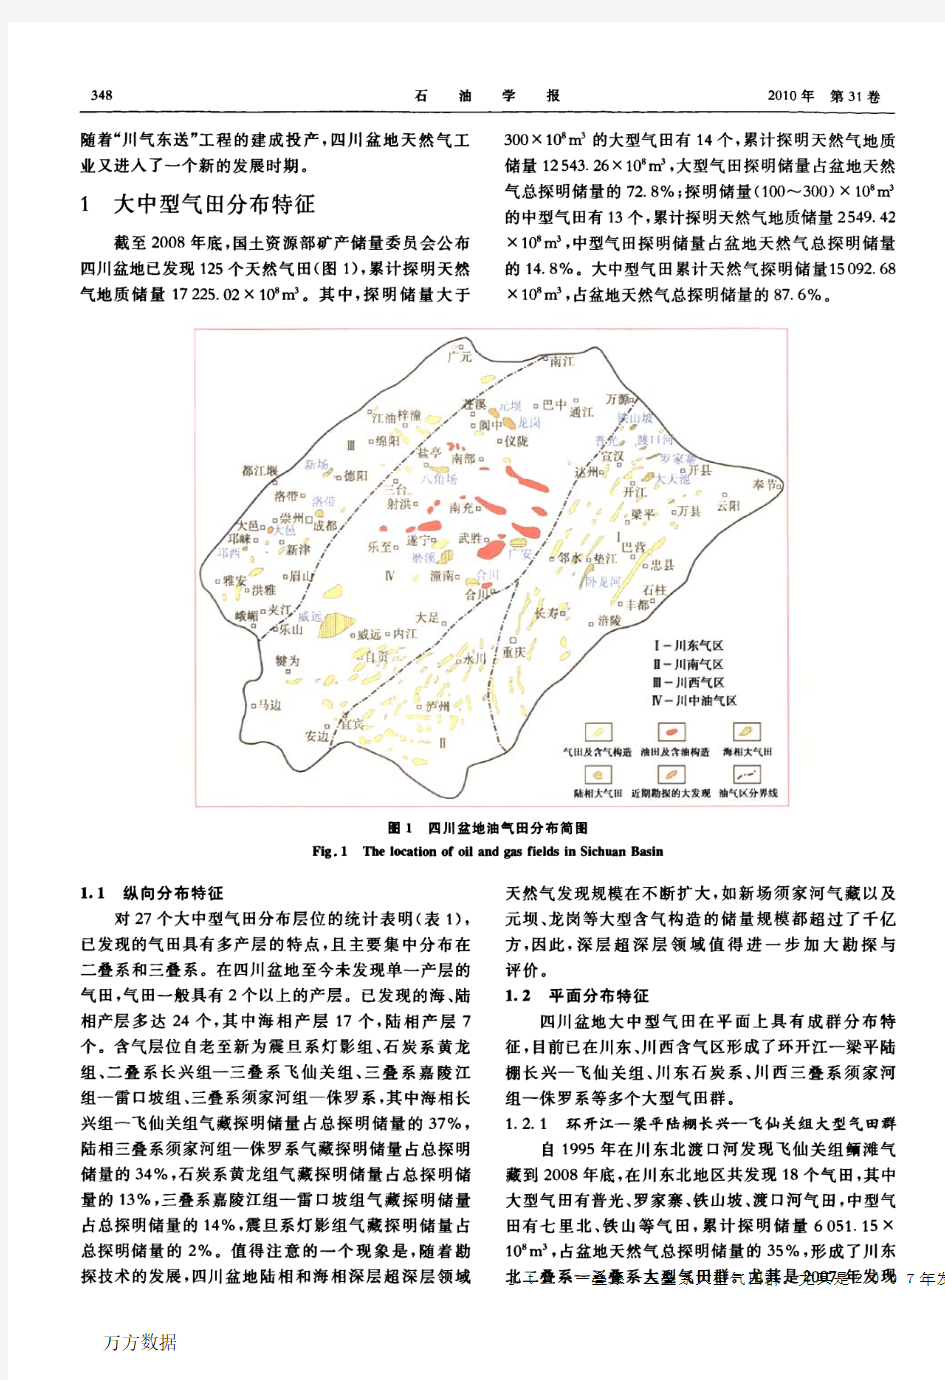 四川盆地大中型天然气田分布特征与勘探方向